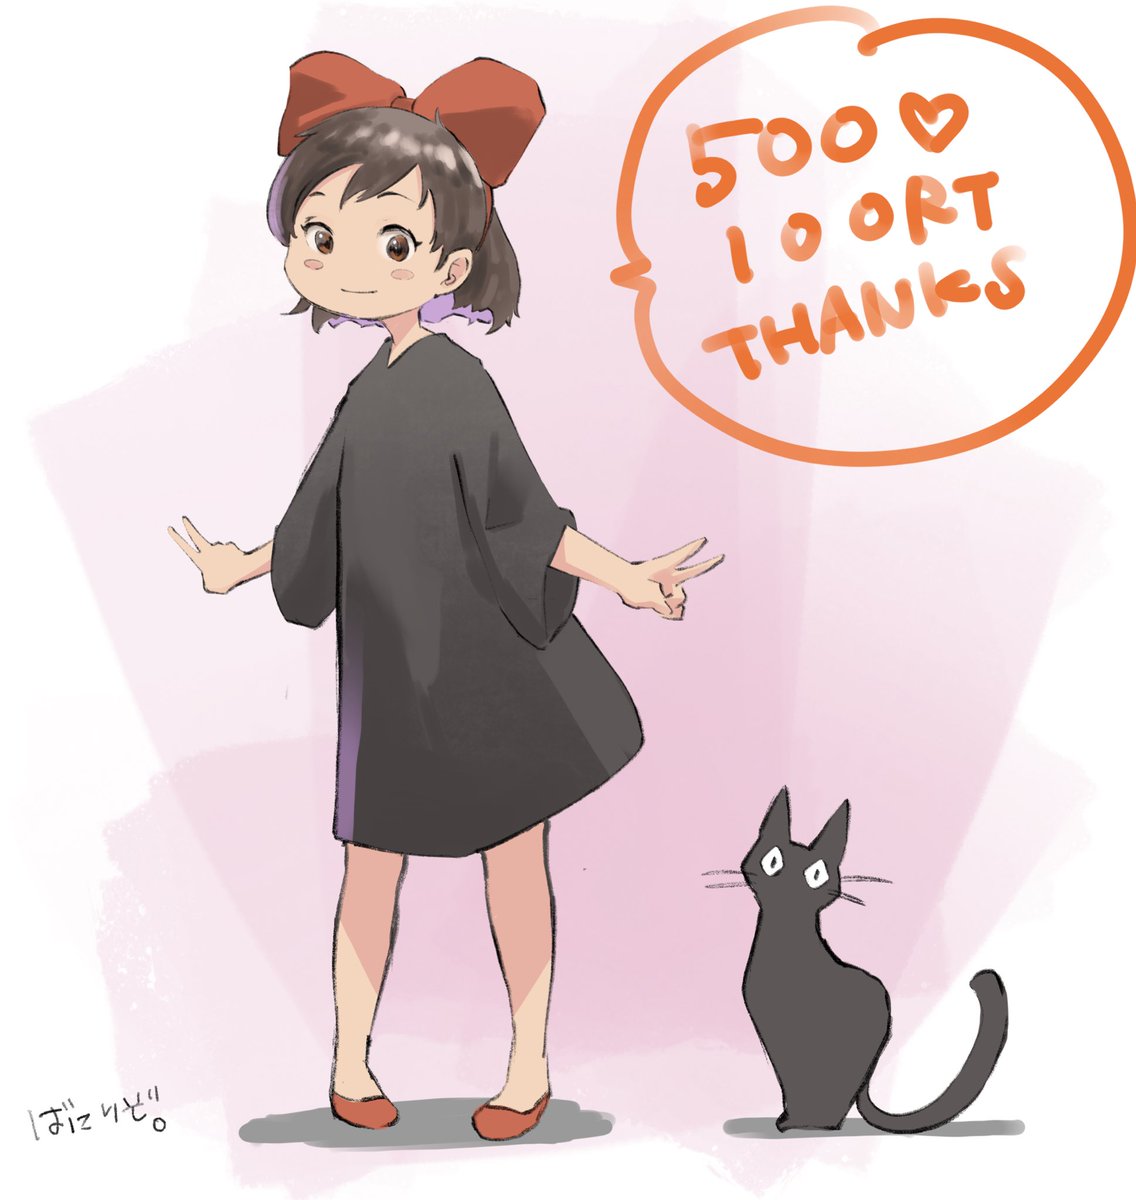 500♡
100RT
ありがとうございます! 